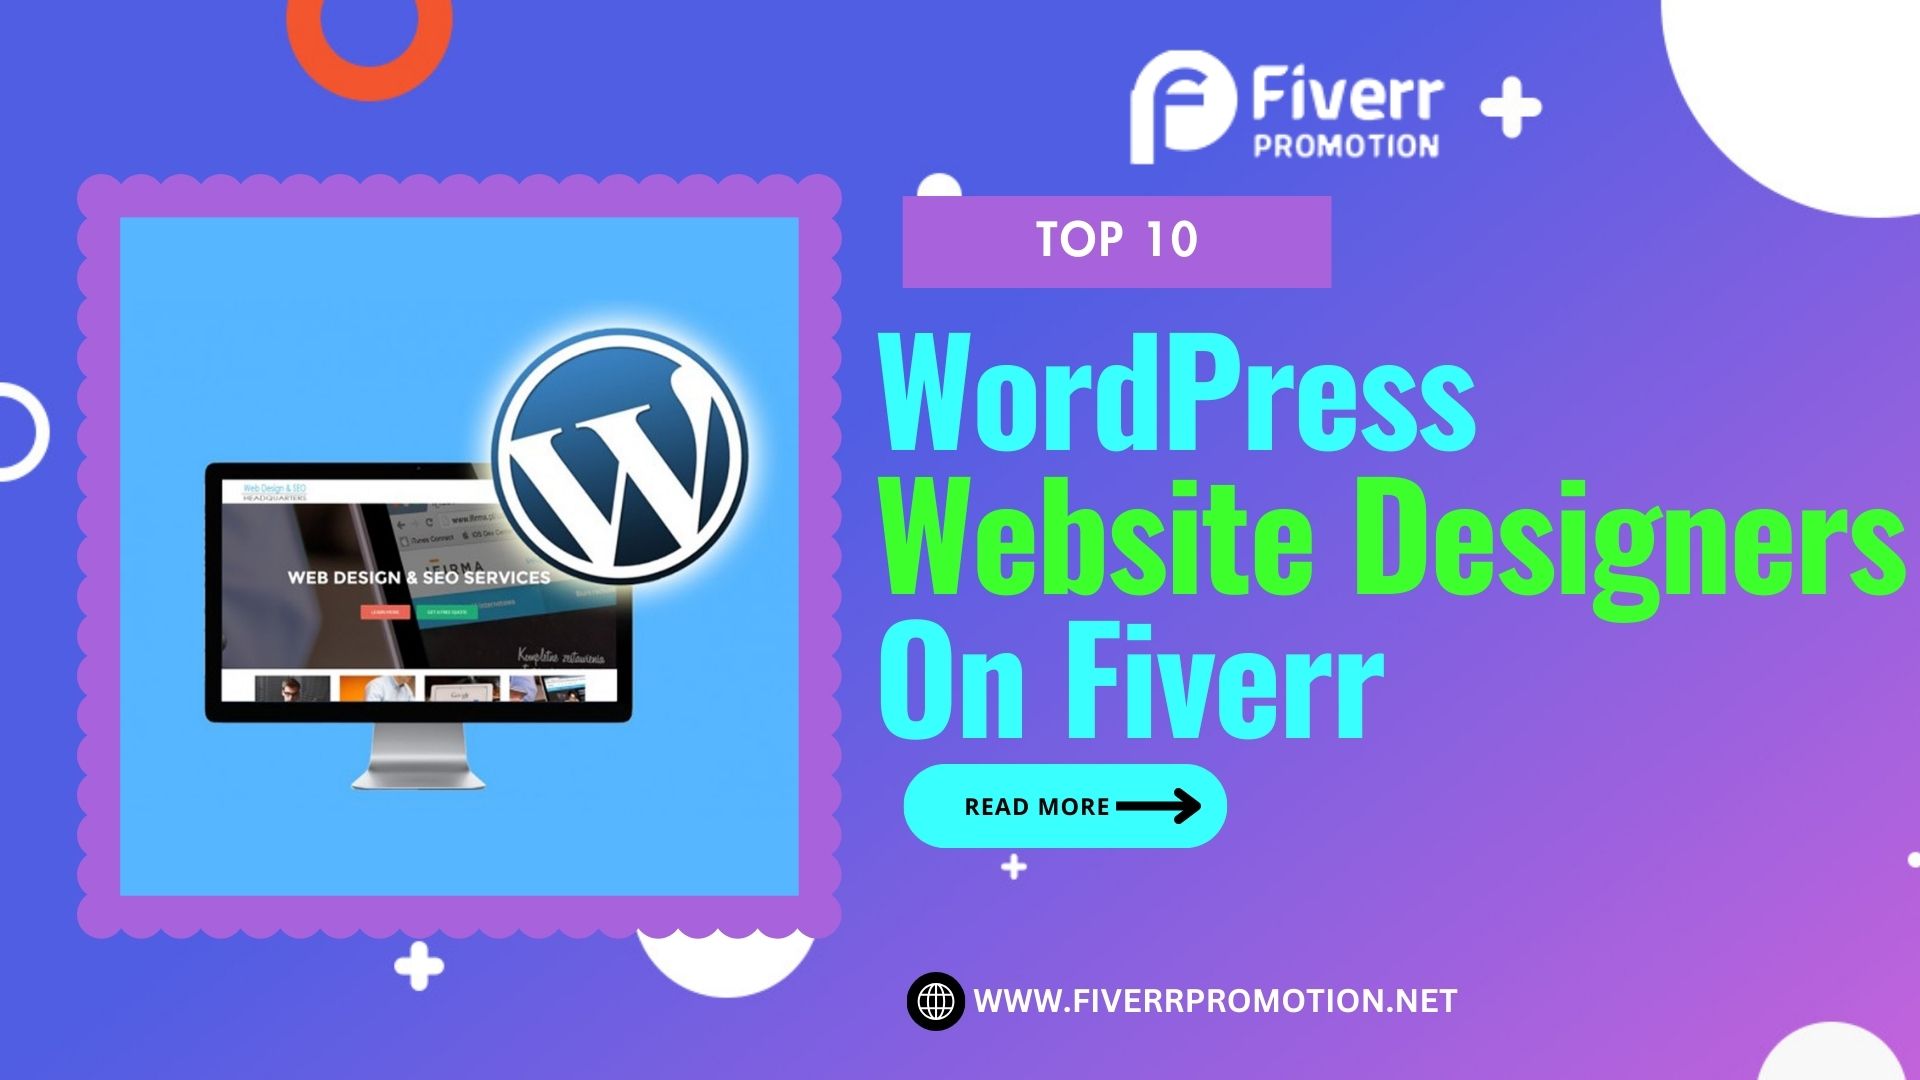 Top 10 WordPress Website Designers on Fiverr